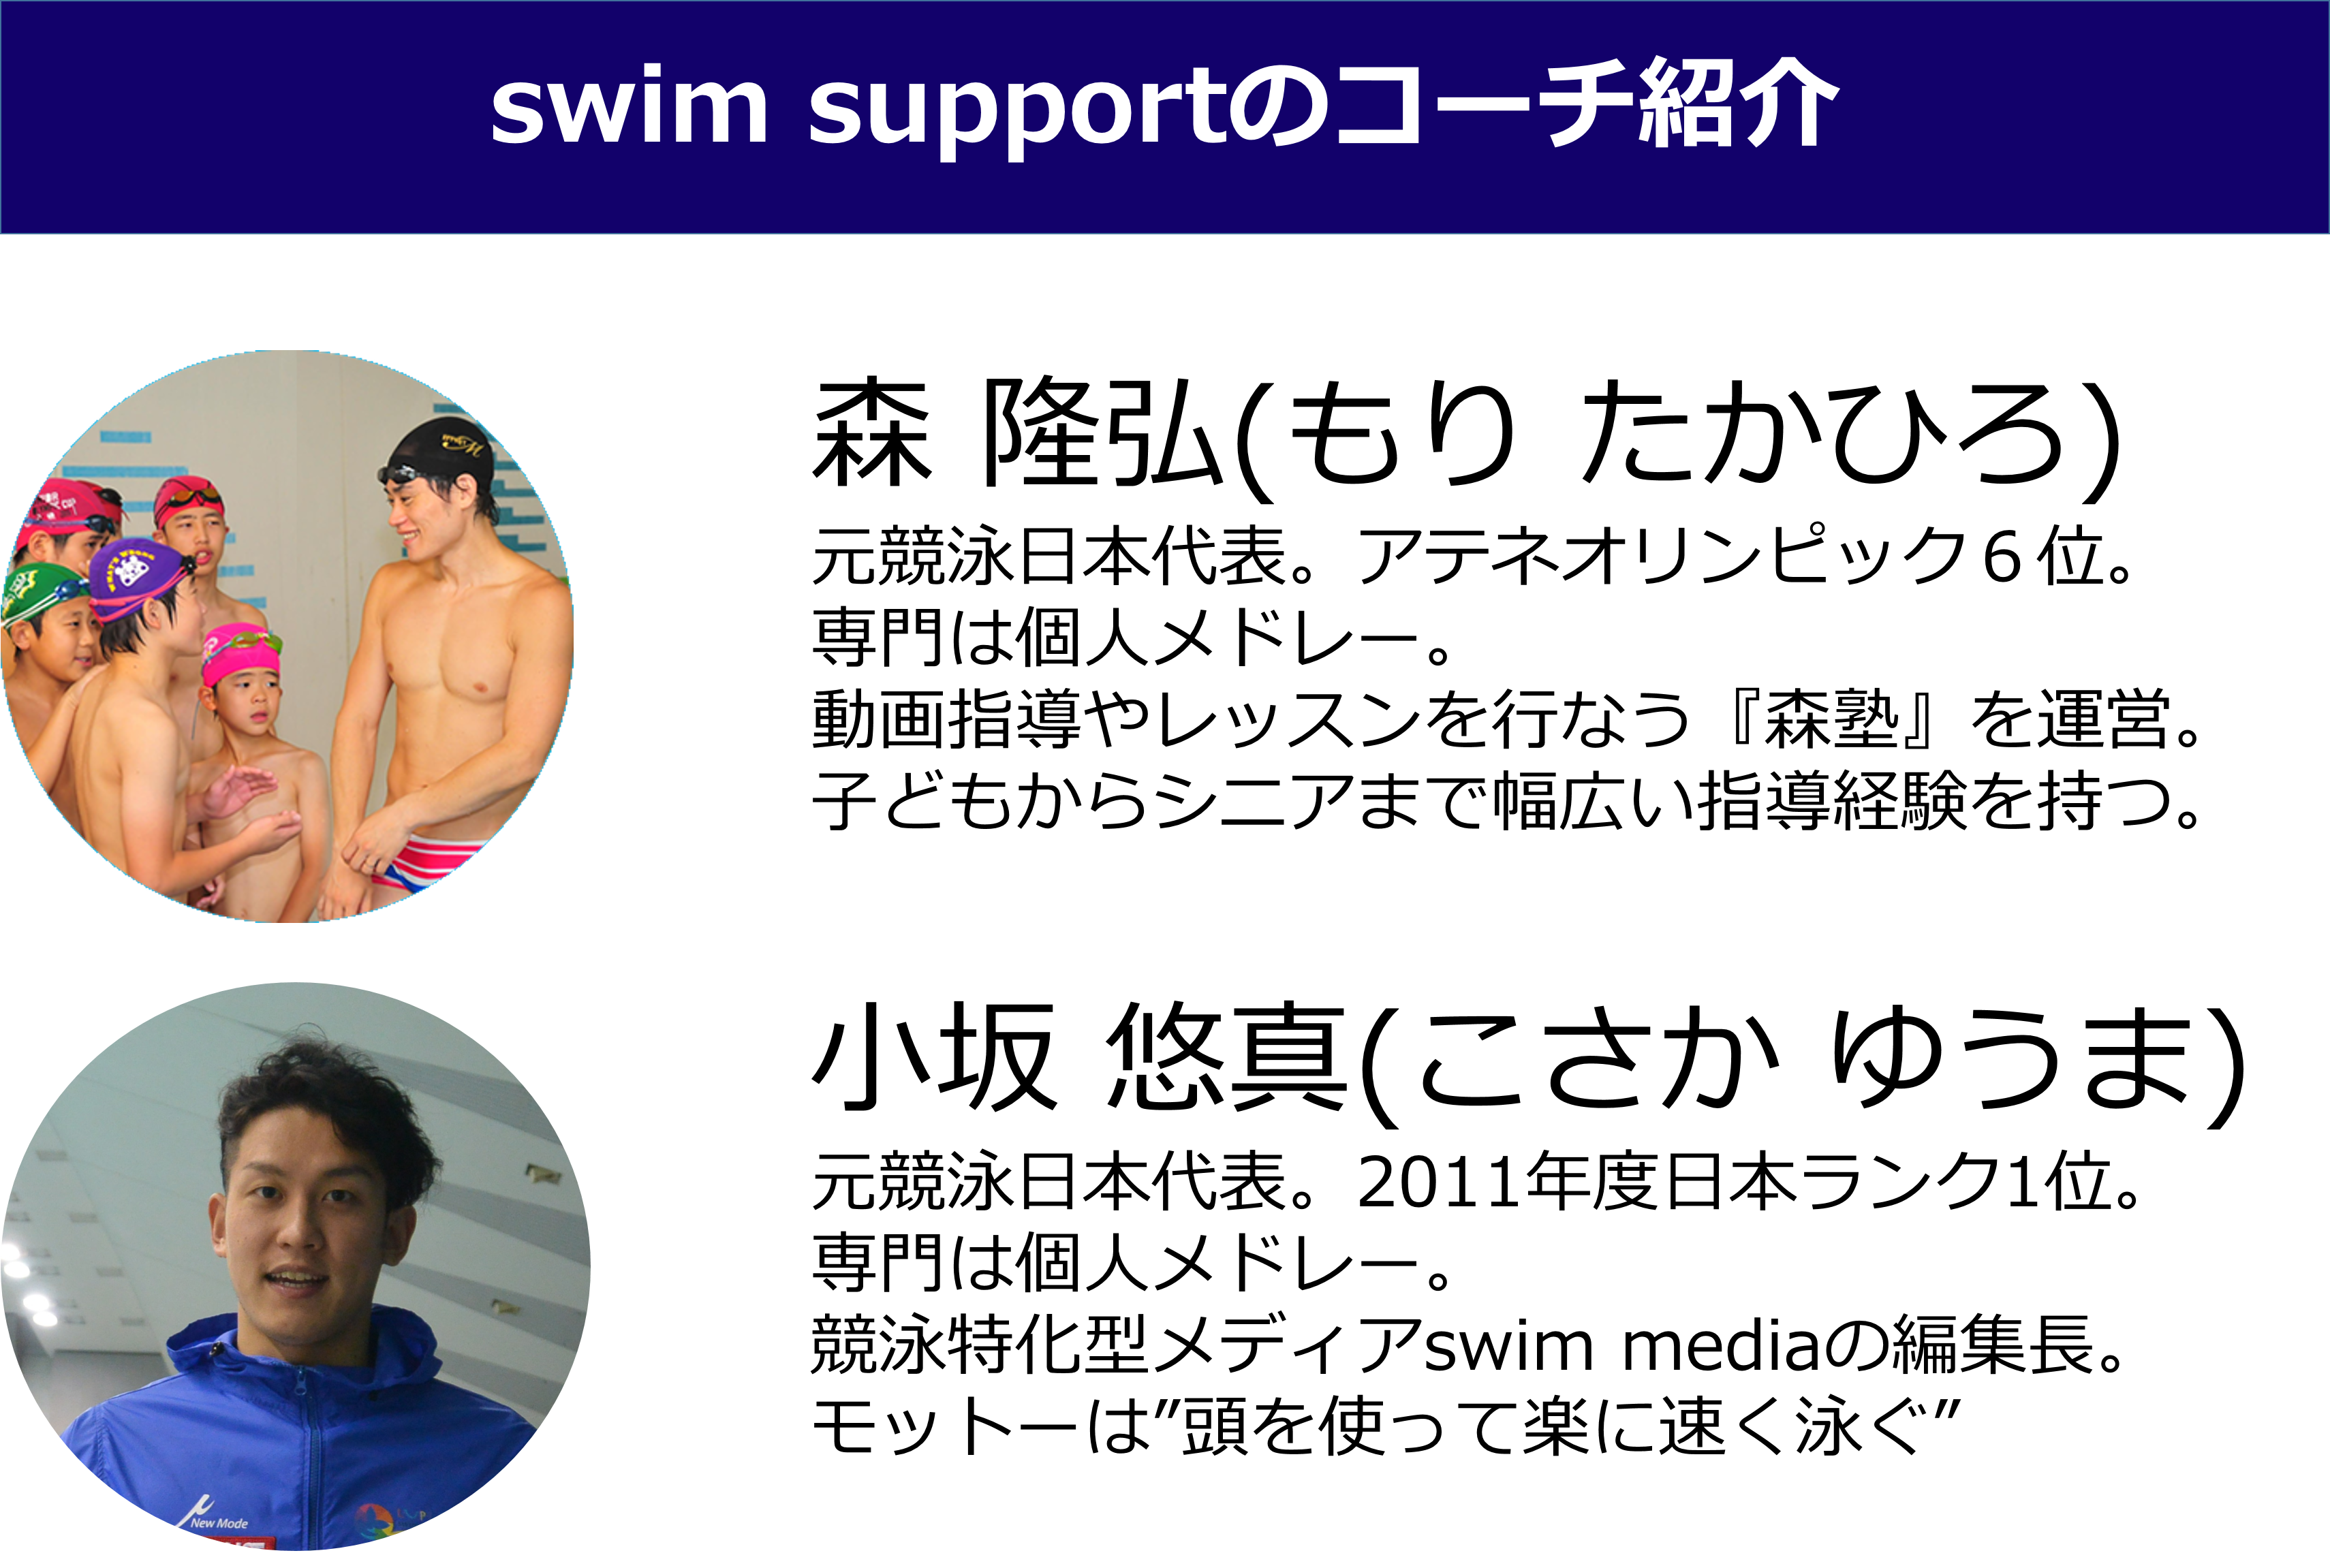 コーチ紹介。森隆弘：元競泳日本代表、アテネオリンピック６位。子供からシニアまで幅広い指導経験があります。小坂悠真：元競泳日本代表、２０１１年度日本ランキング１位。swim mediaの編集長。